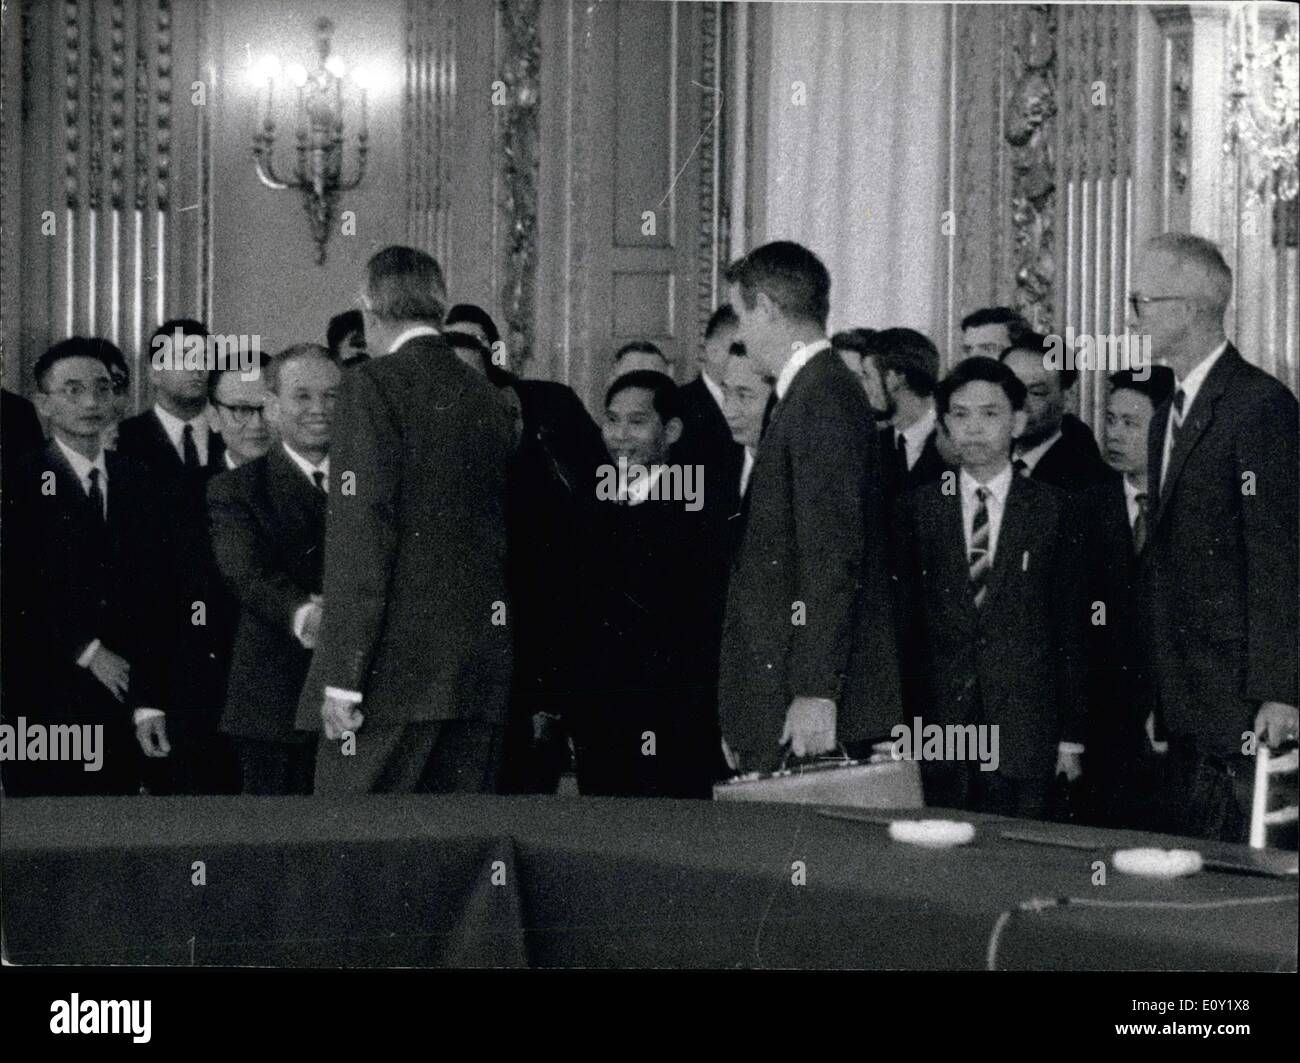 13 maggio 1968 - Il primo incontro fecondo di americani e nord Vietnamiti delegazioni ha avuto luogo questa mattina intorno alle 10:30 Foto Stock